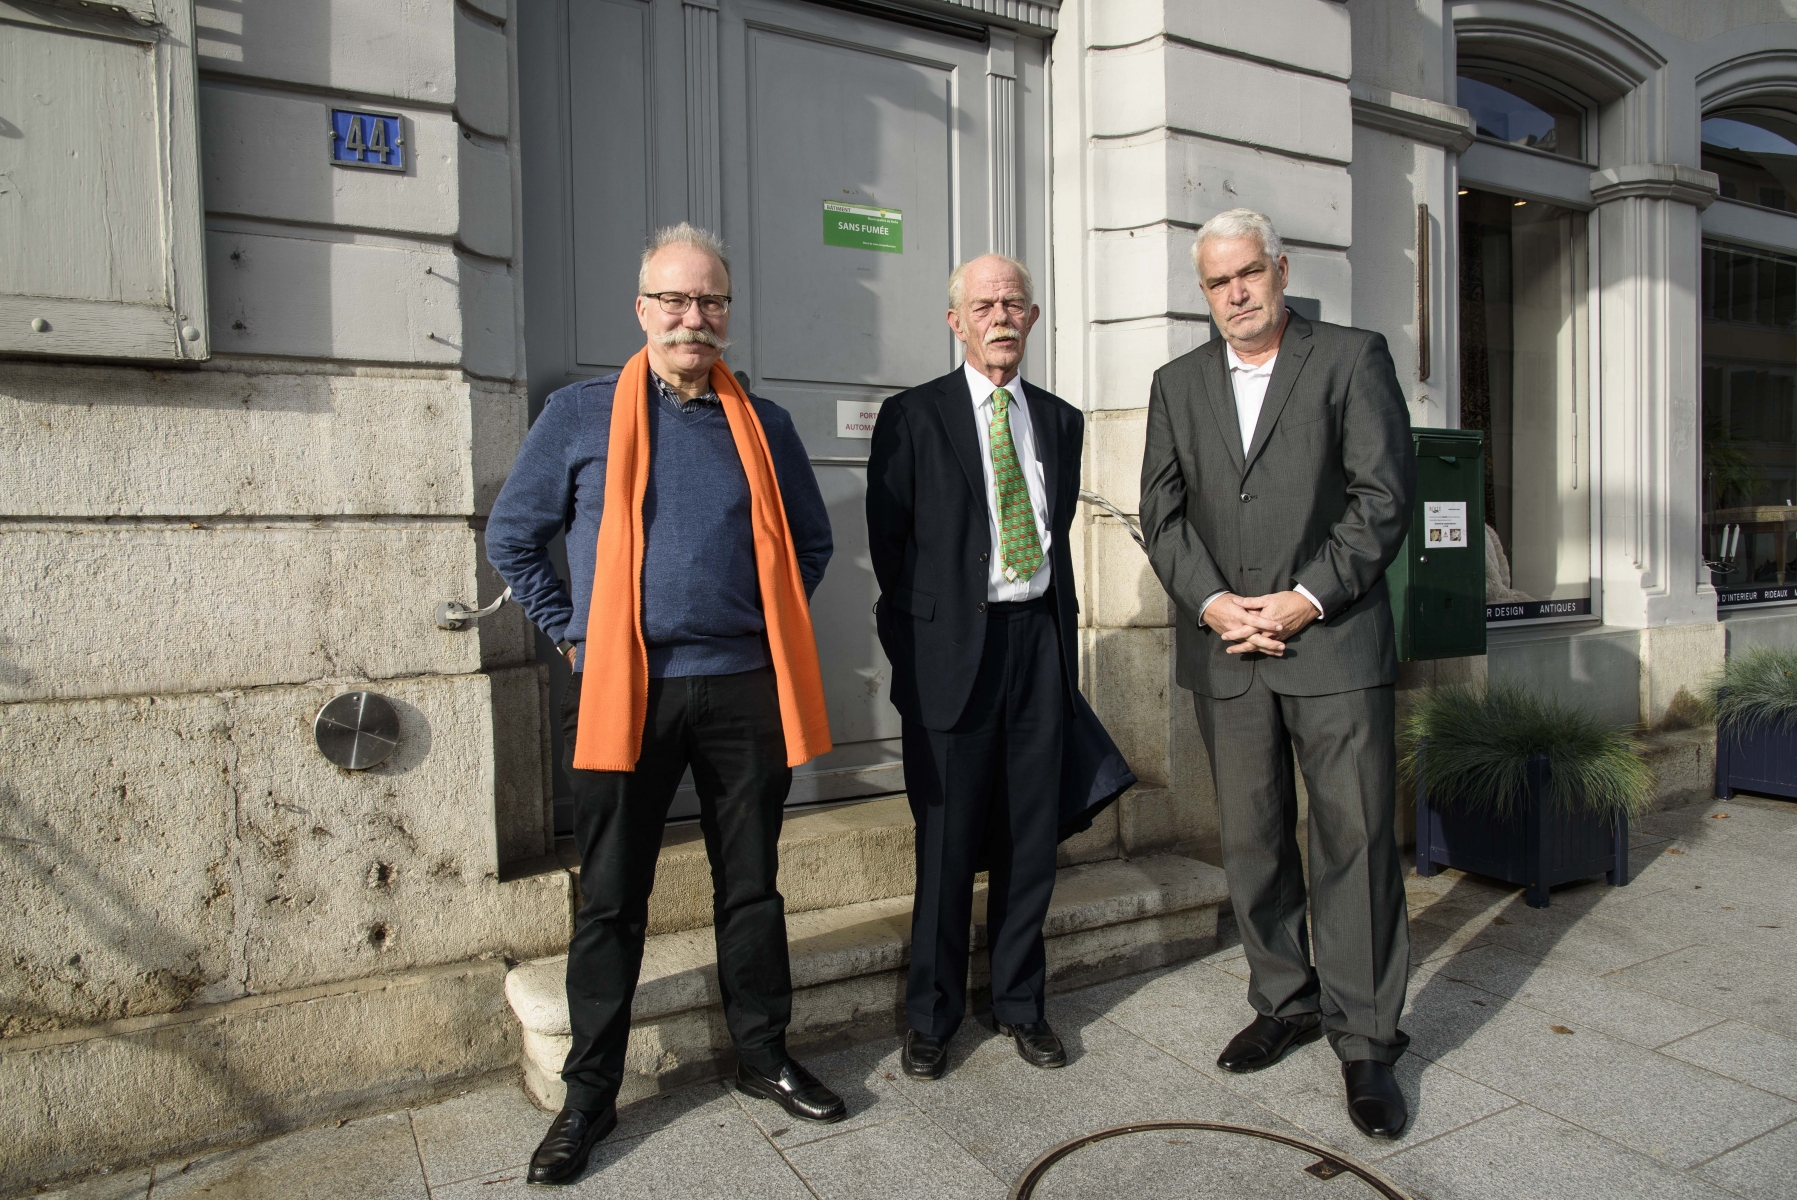 Christian Hay, du centre- droite (à g.) et le socialiste Denys Jaquet (à dr.), se présentent pour le deuxième tour. Jacques Tschudin  (au centre), Vert'libéral, renonce comme annoncé.